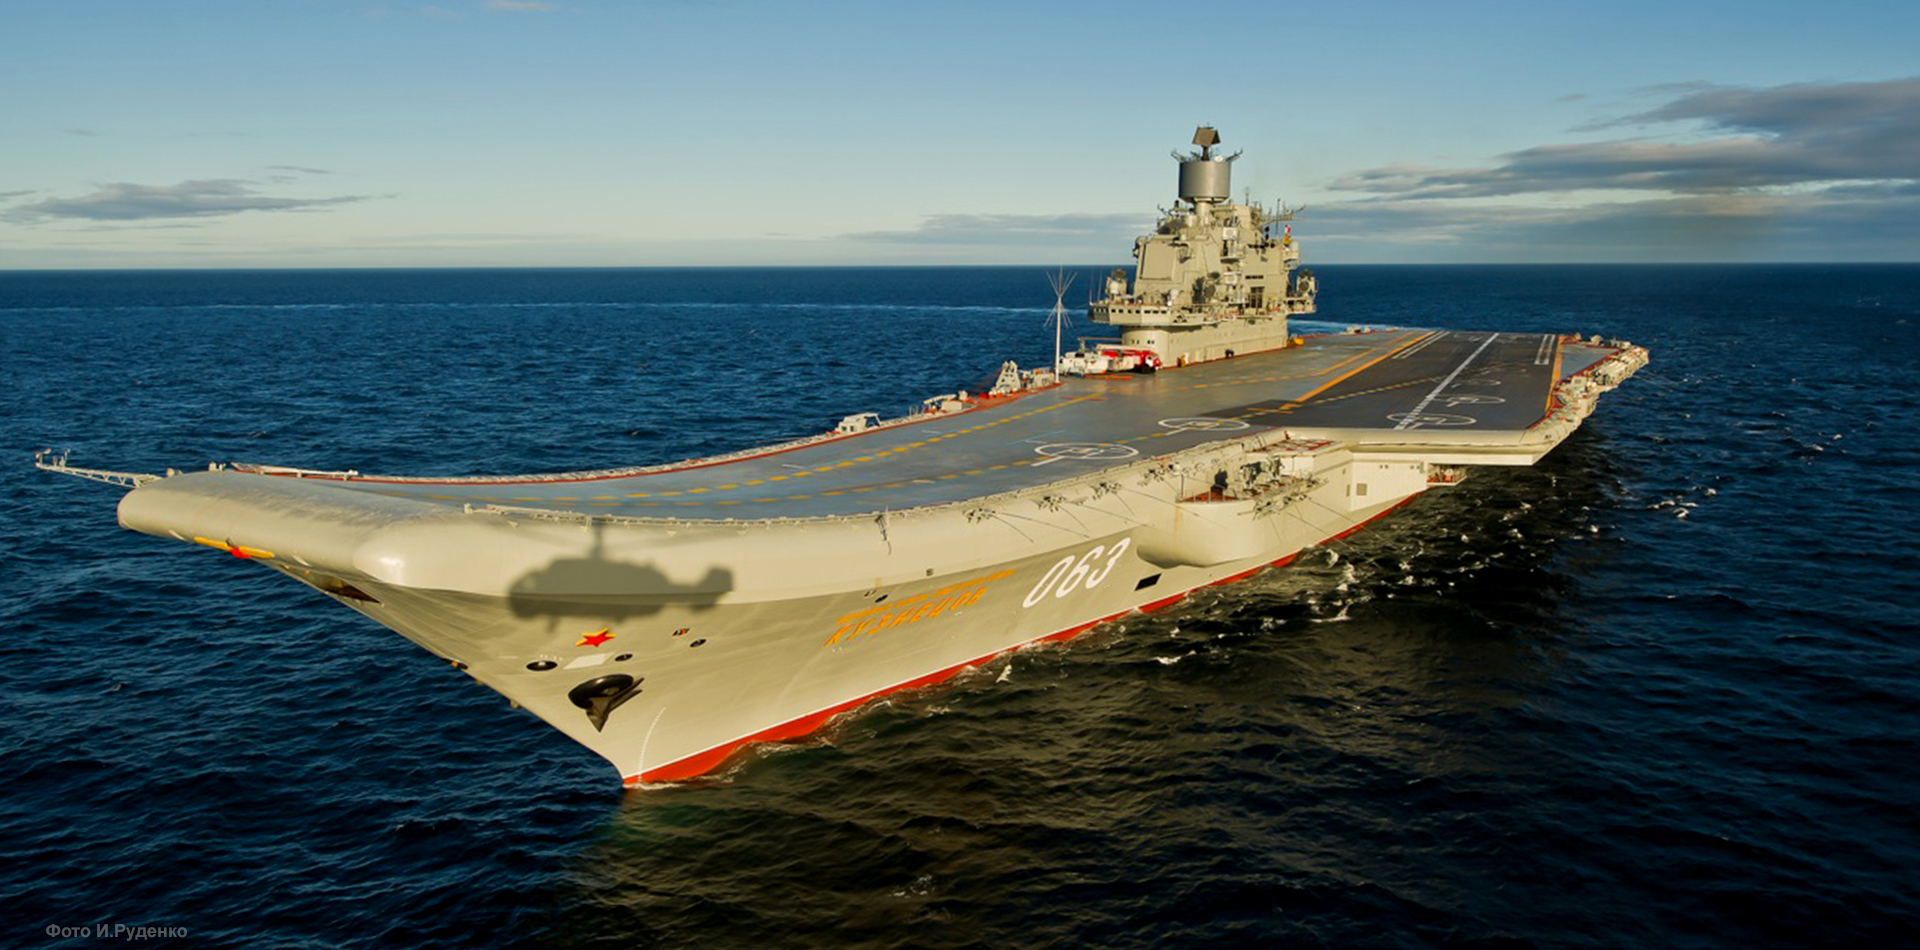 L'unica portaerei russa Admiral Kuznetsov ha preso fuoco a Murmansk - è in riparazione dal 2018